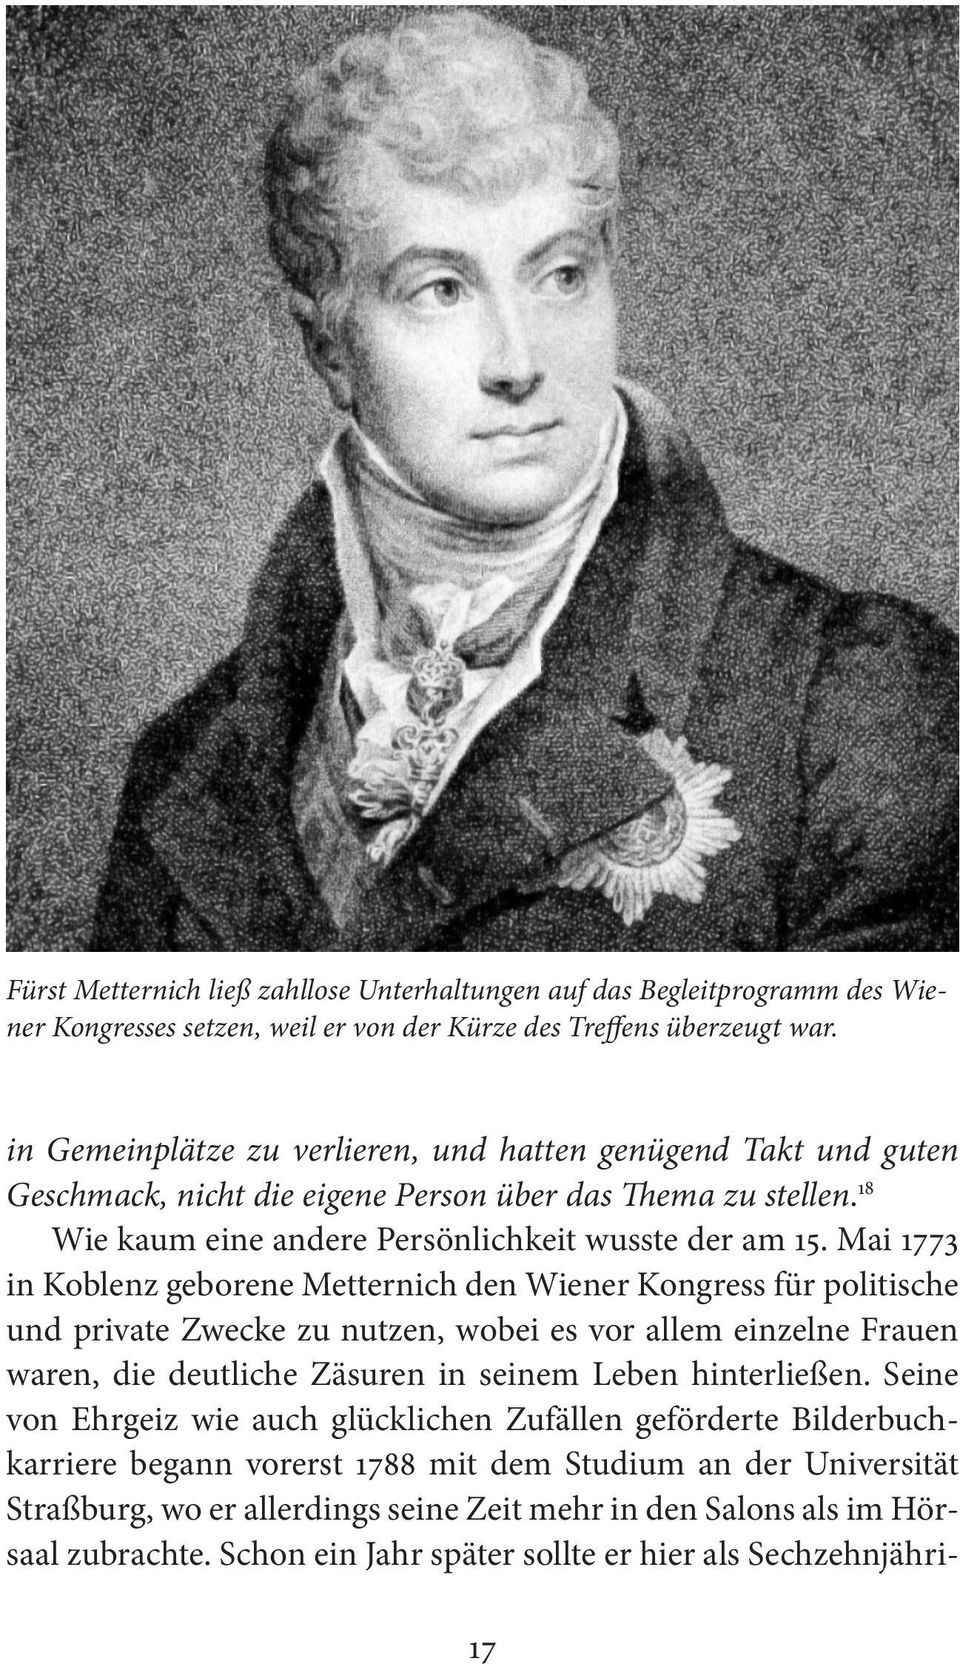 Mai 1773 in Koblenz geborene Metternich den Wiener Kongress für politische und private Zwecke zu nutzen, wobei es vor allem einzelne Frauen waren, die deutliche Zäsuren in seinem Leben hinterließen.